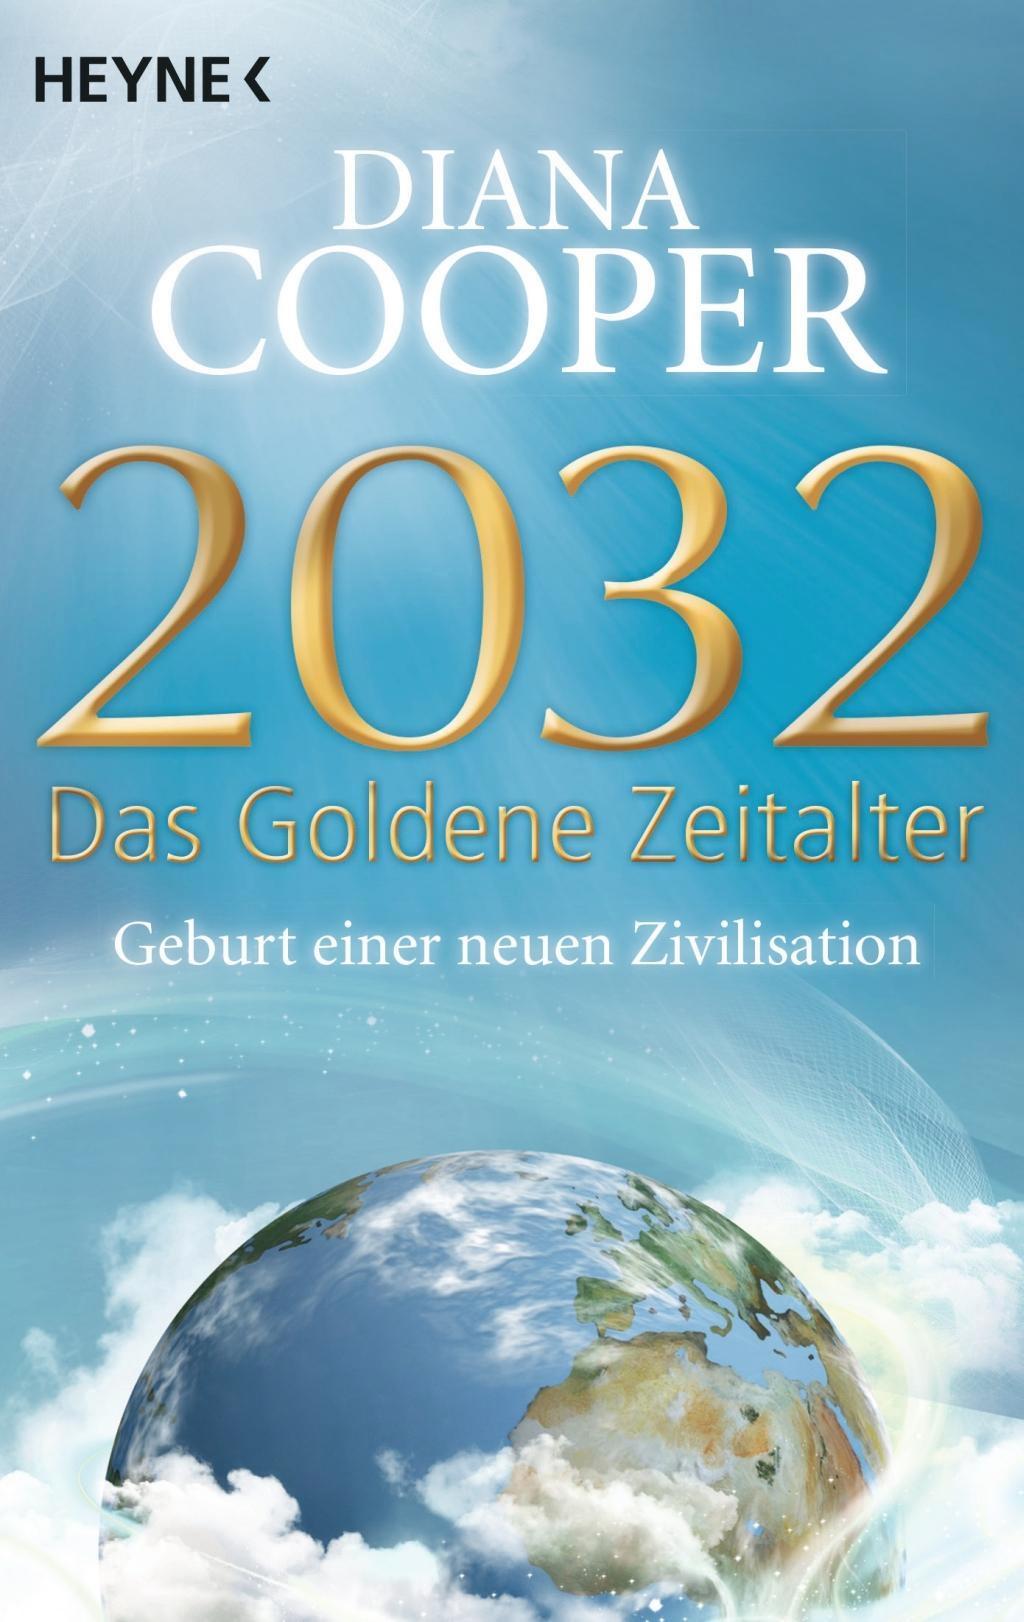 2032 Das Goldene Zeitalter